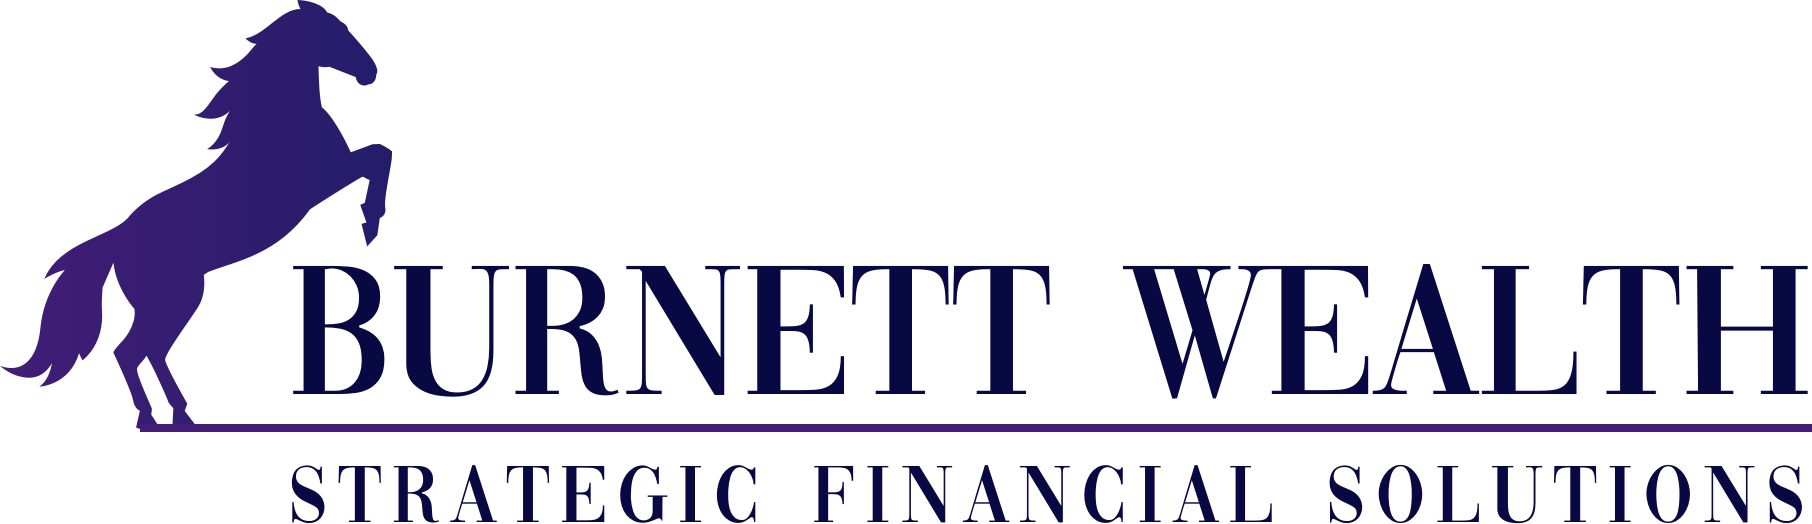 Burnett Wealth logo